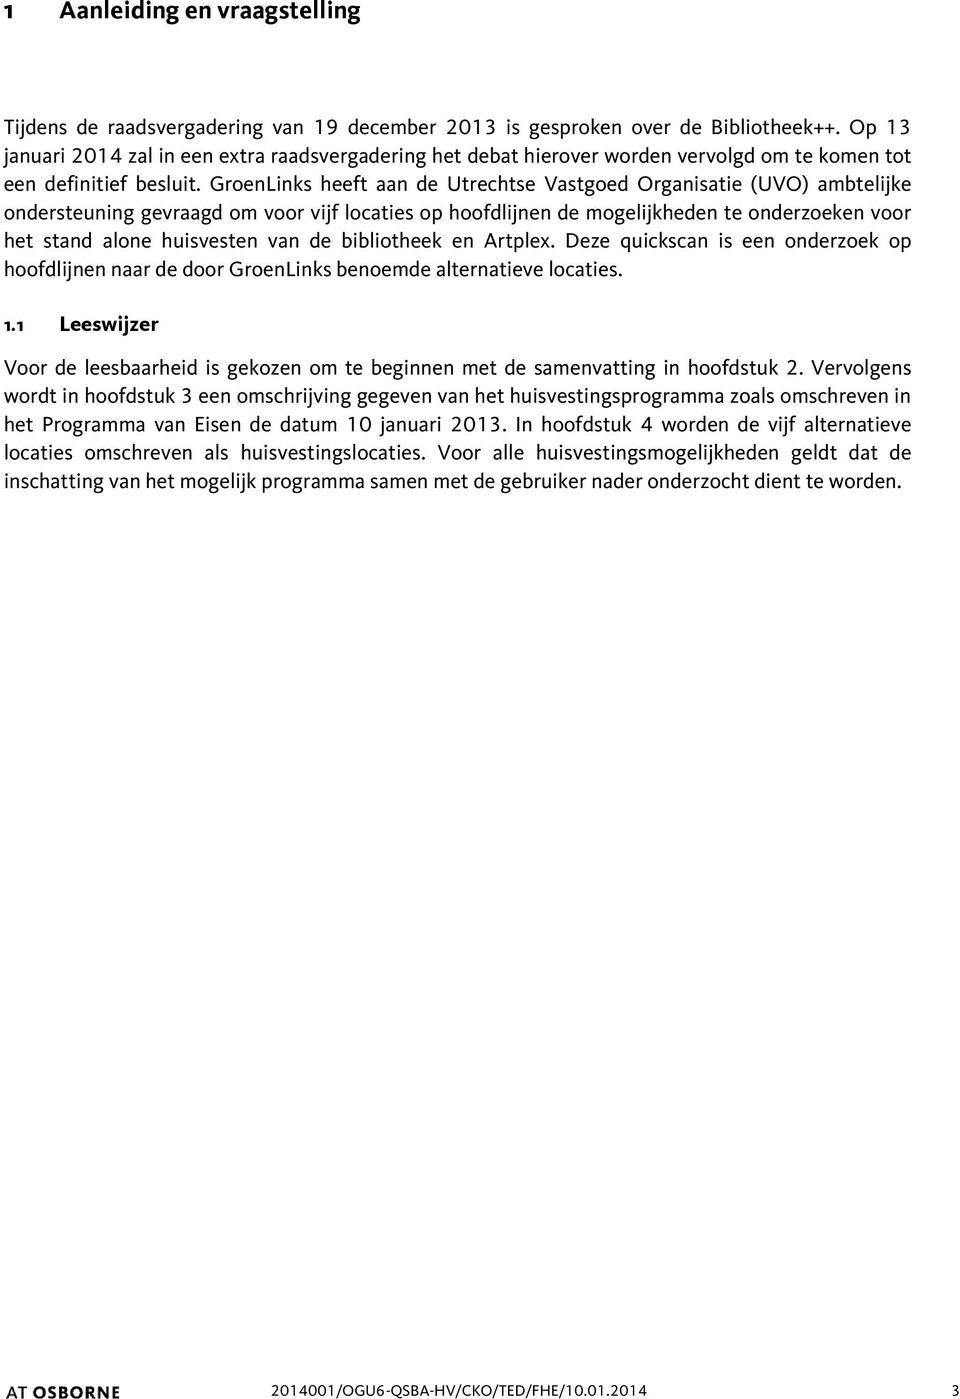 GroenLinks heeft aan de Utrechtse Vastgoed Organisatie (UVO) ambtelijke ondersteuning gevraagd om voor vijf locaties op hoofdlijnen de mogelijkheden te onderzoeken voor het stand alone huisvesten van